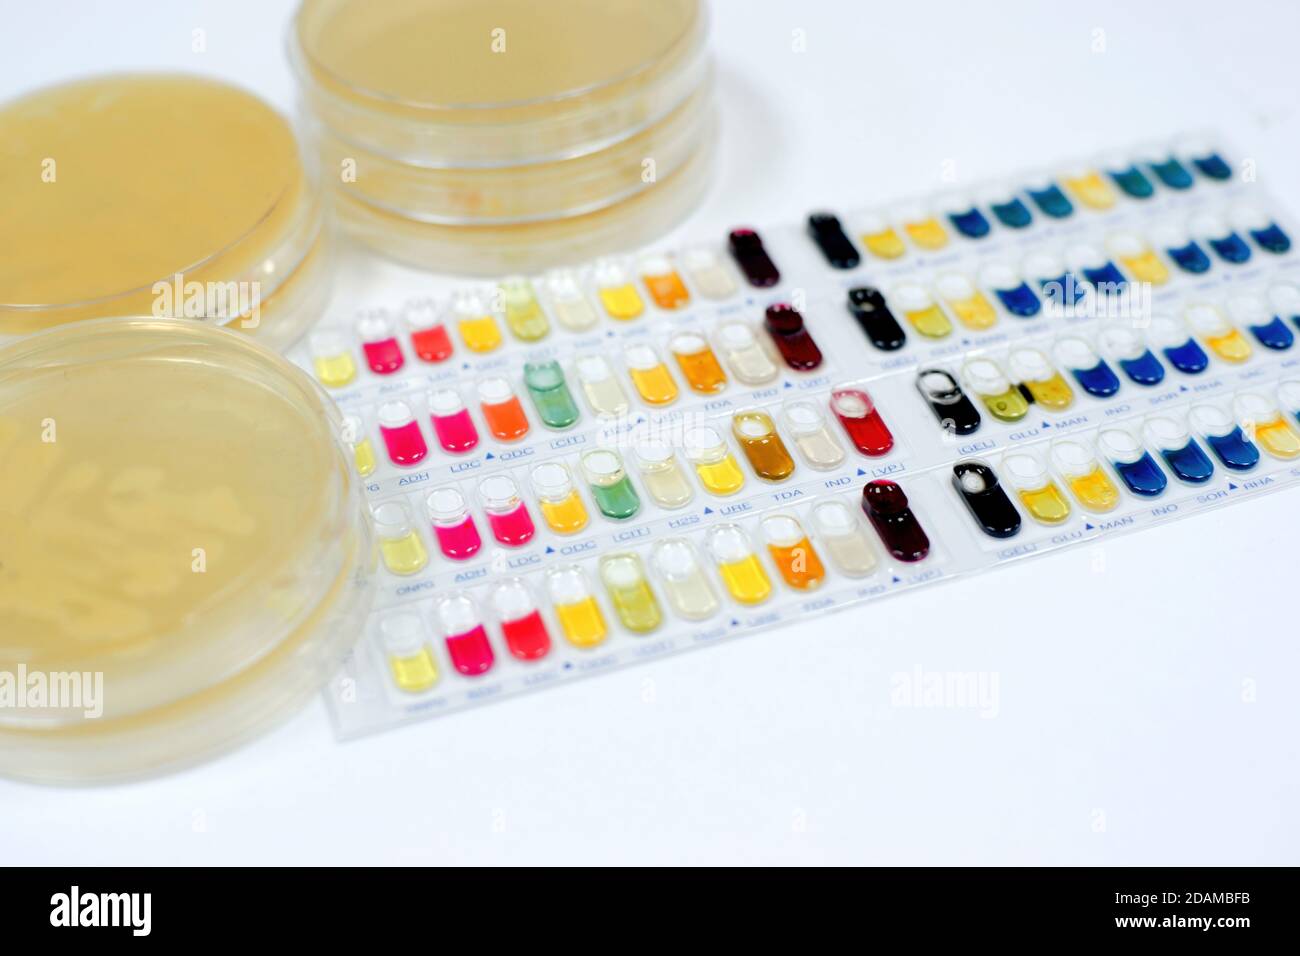 Kits de test d'identification des bactéries pour l'identification des bactéries à Gram positif et à Gram négatif et des levures. Banque D'Images